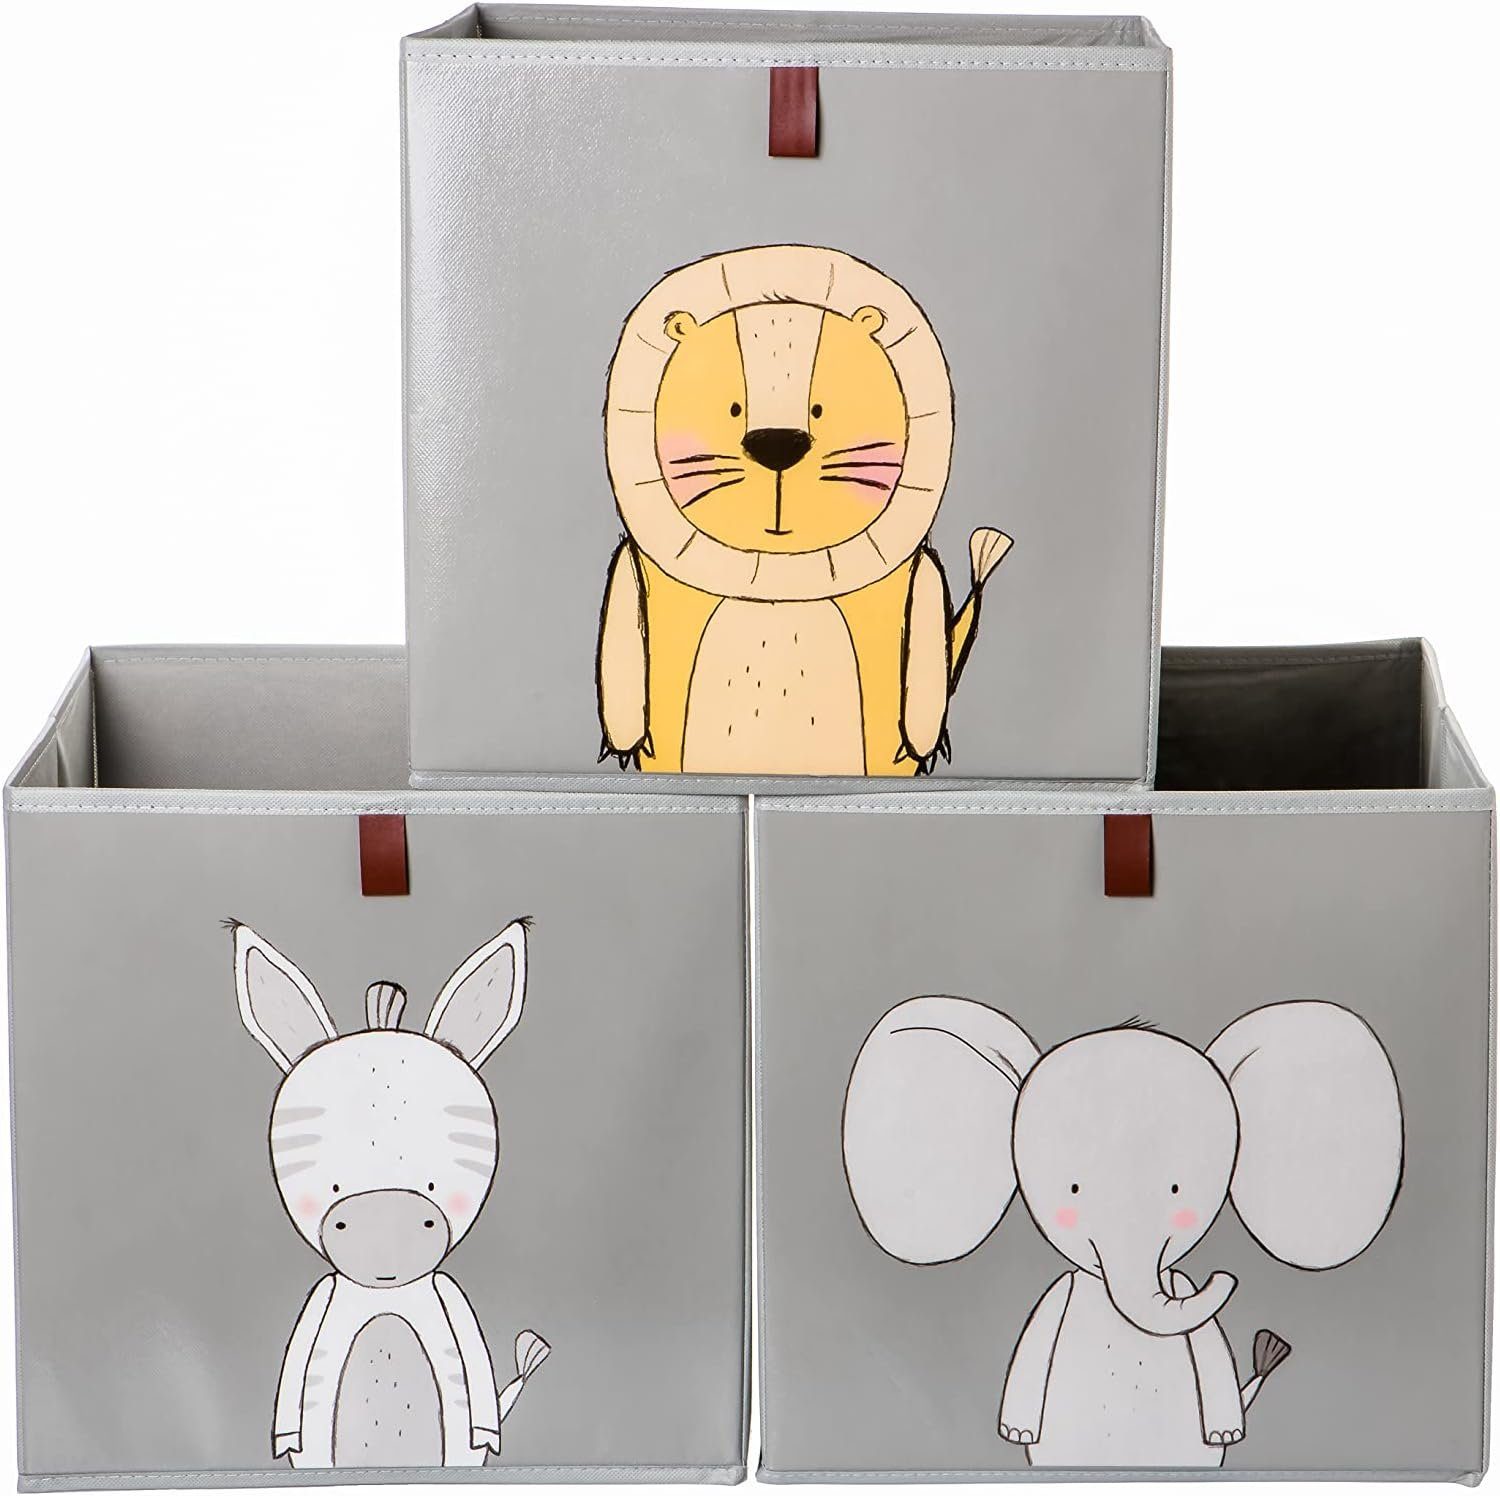 2friends Faltbox 3er Set Aufbewahrungsboxen für Kallax Boxen - Kinder Spielzeugkiste (33L x 33B x 33H cm), Abwaschbar Kallax Boxen mit Schlaufe zum Herausziehen Grau